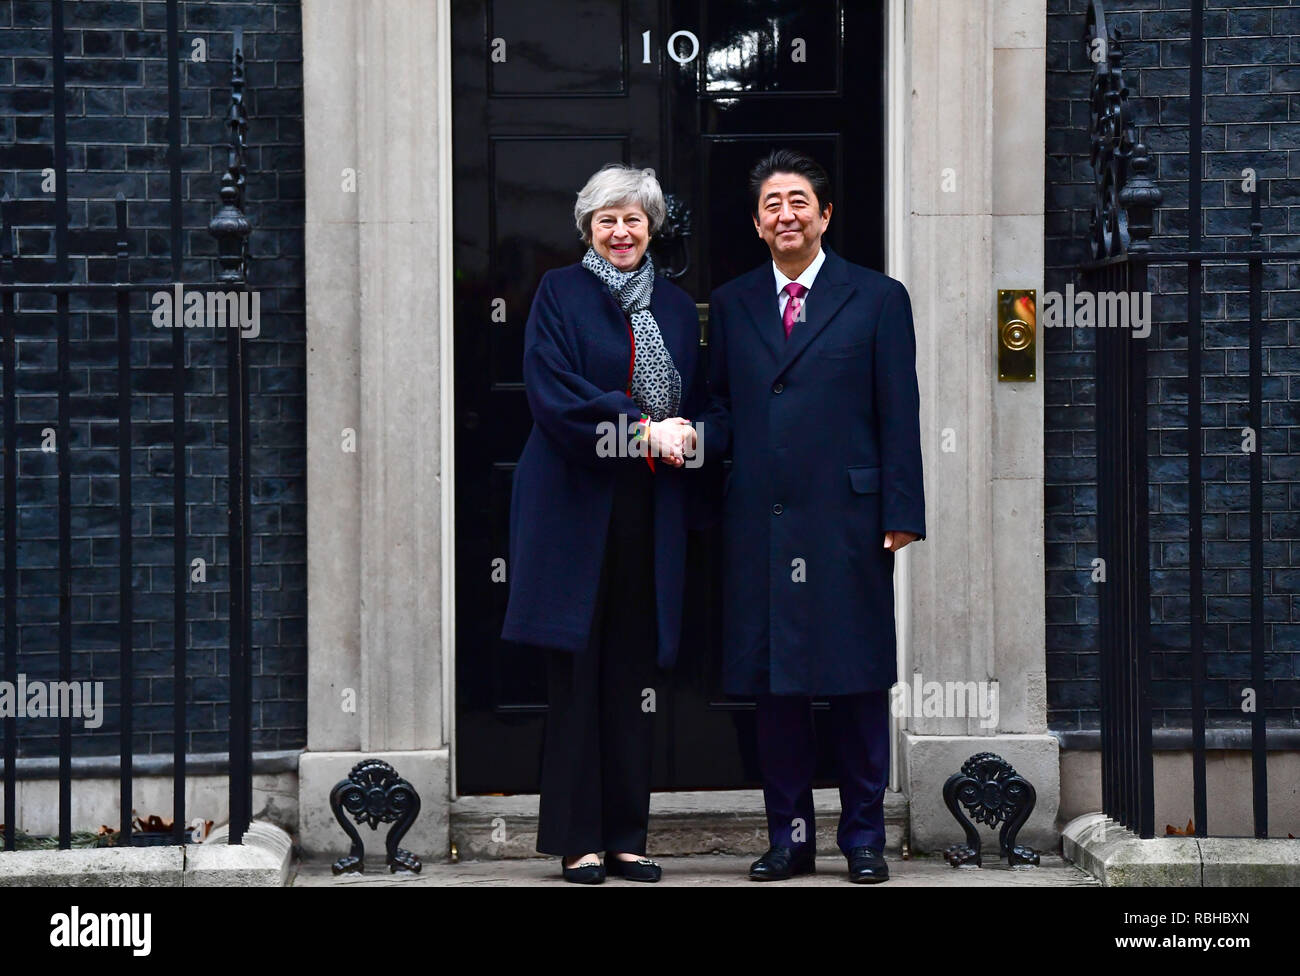 Premier ministre Theresa peut accueille le Premier ministre japonais Shinzo Abe en dehors de 10 Downing Street, Londres la veille d'une réunion bilatérale. Banque D'Images